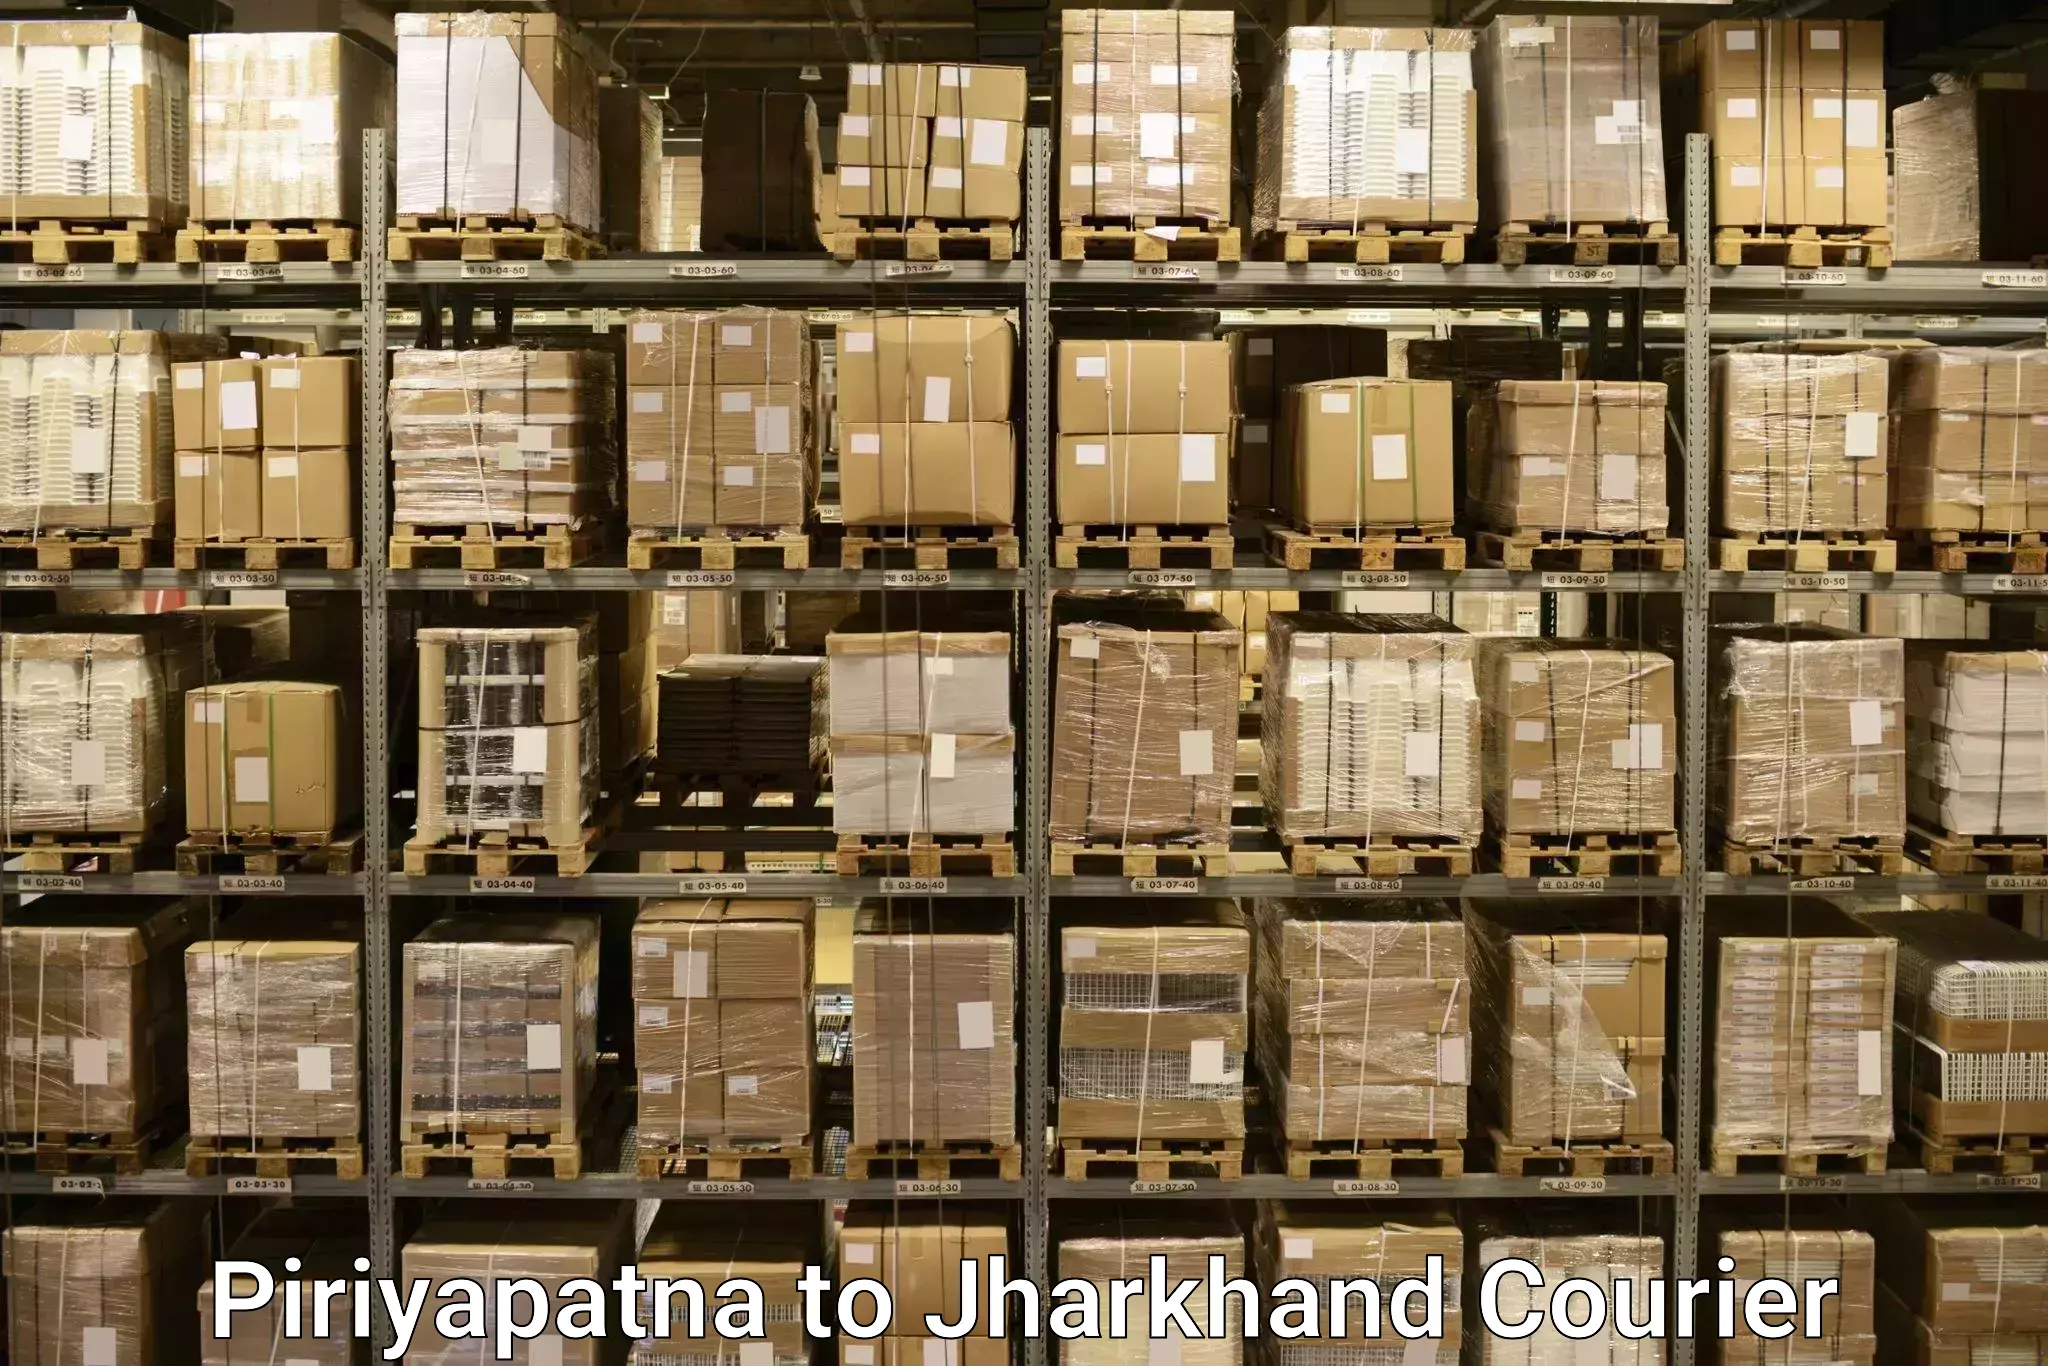 Holiday baggage shipping Piriyapatna to Jamshedpur